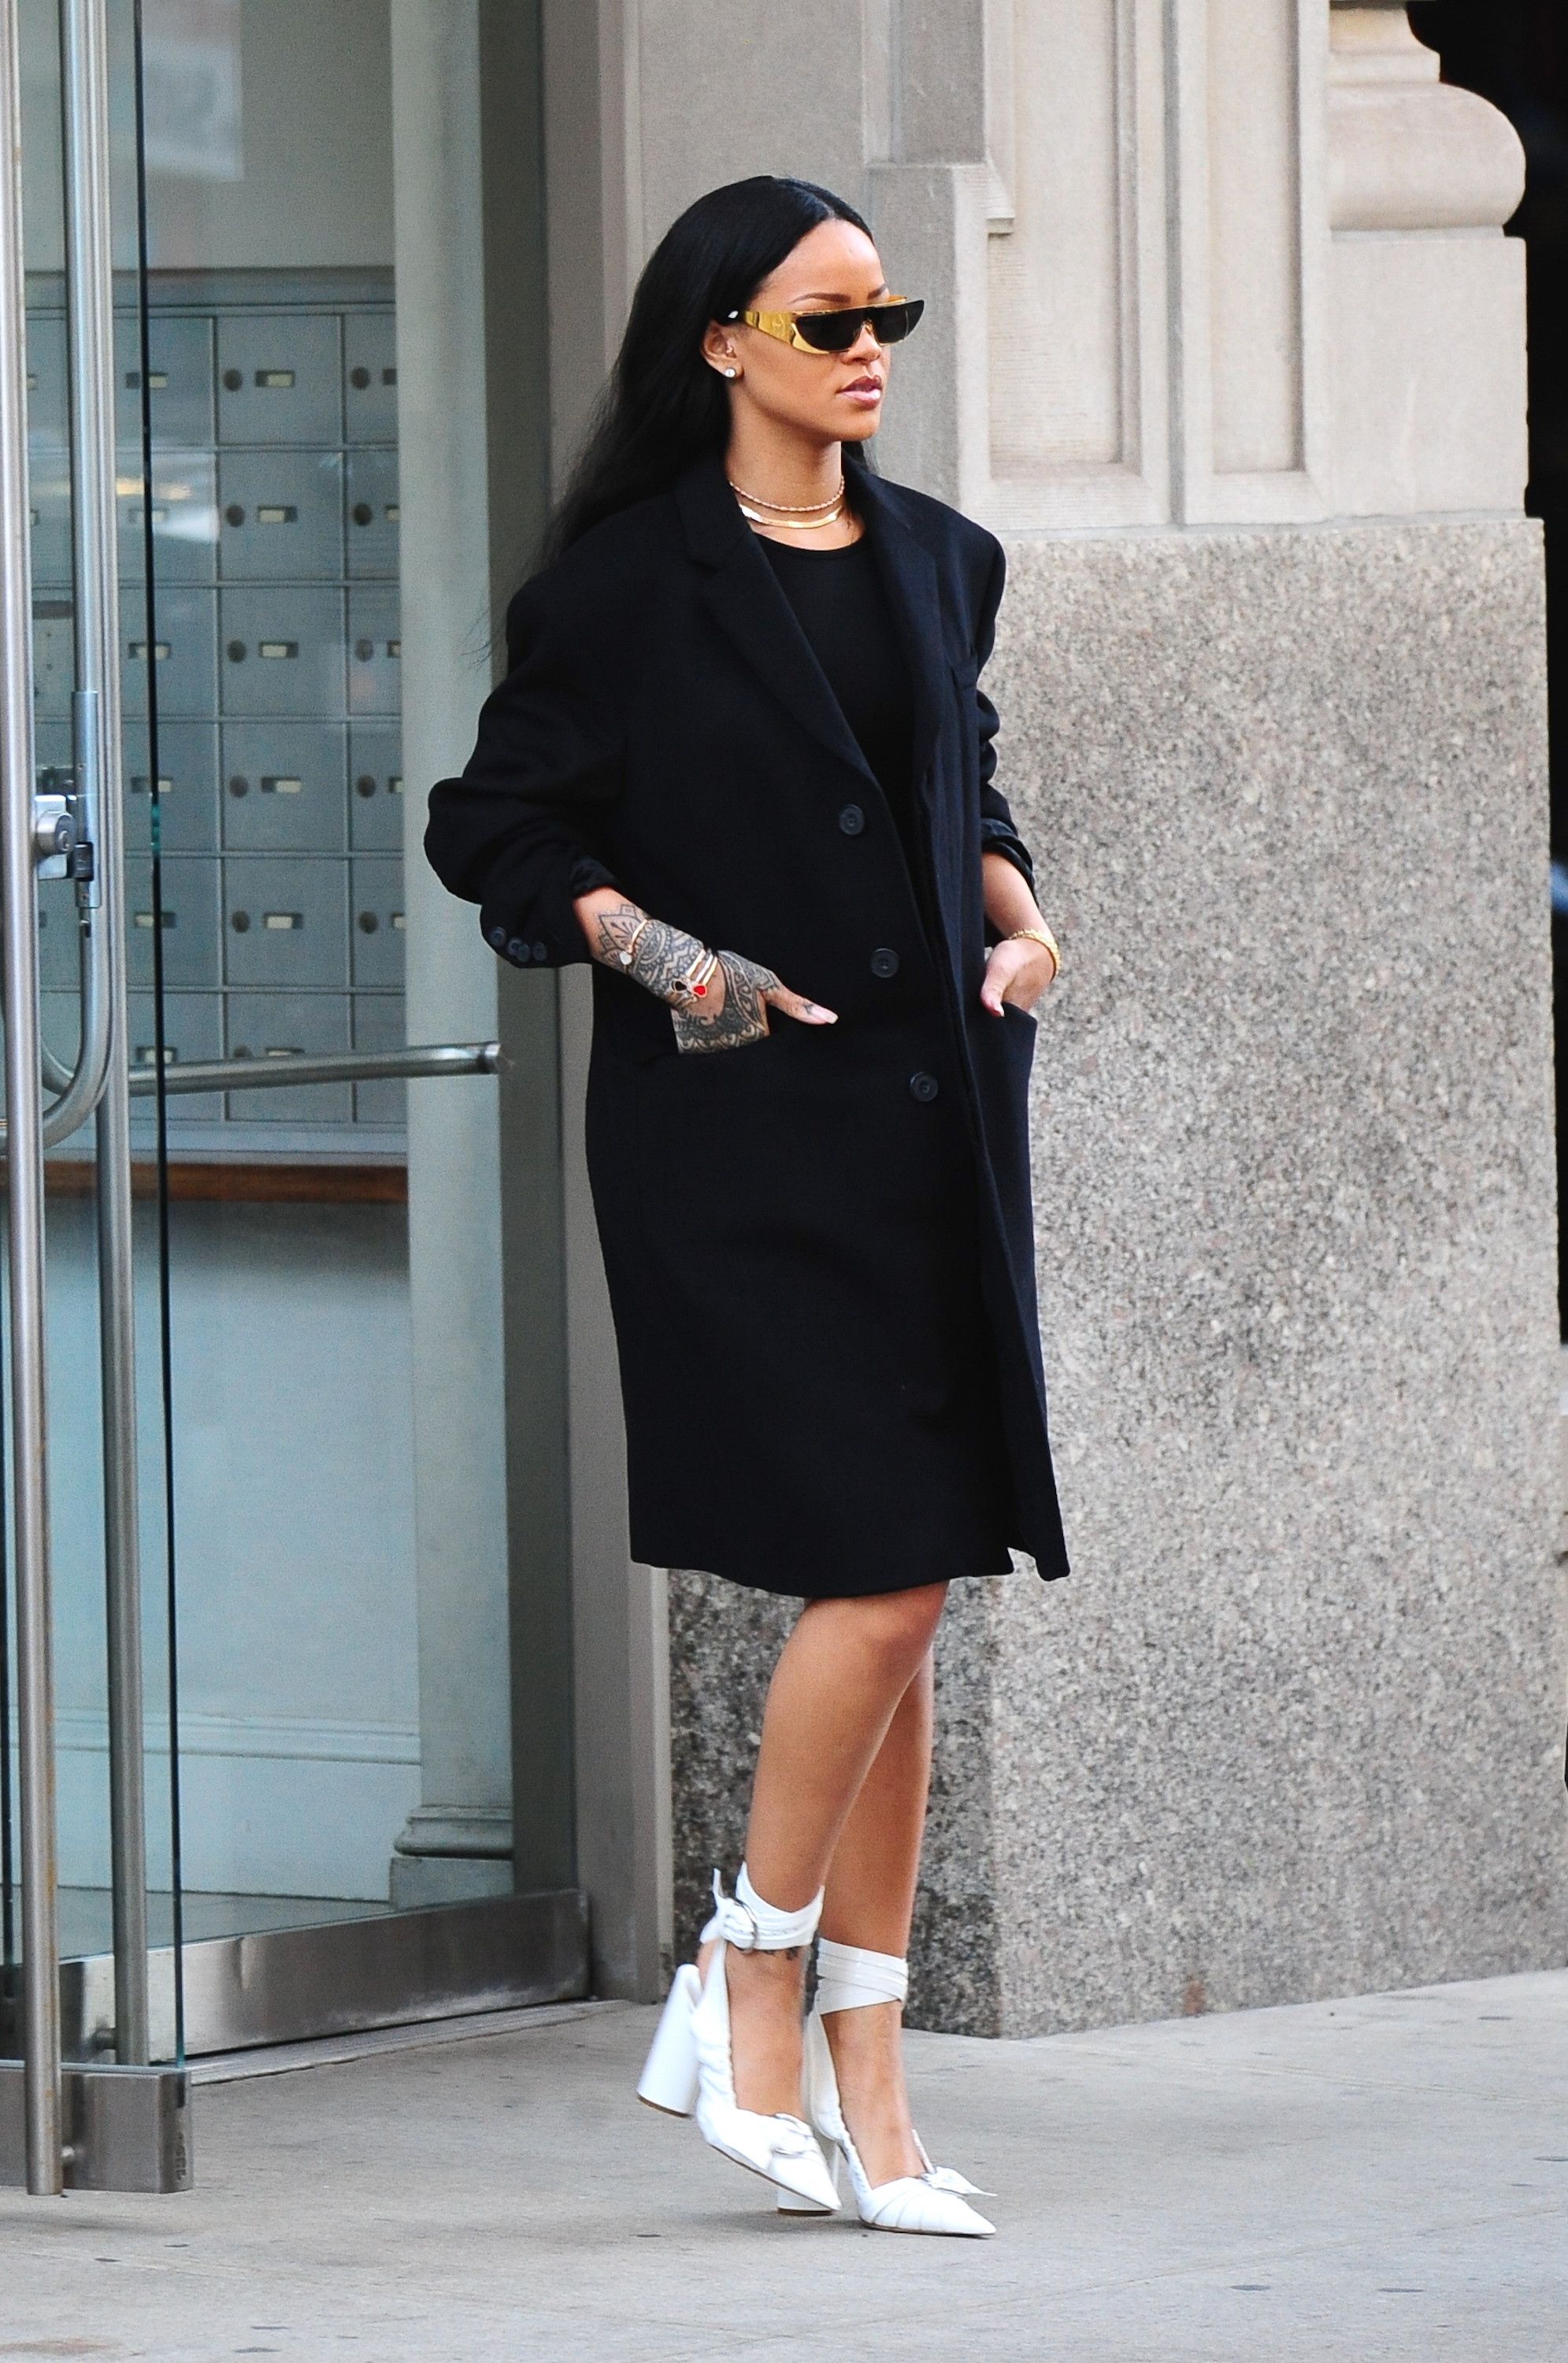 蕾哈娜皮衣包緊只露美腿 千萬鑽石閃爆回歸時尚圈 | ET Fashion | ETtoday新聞雲